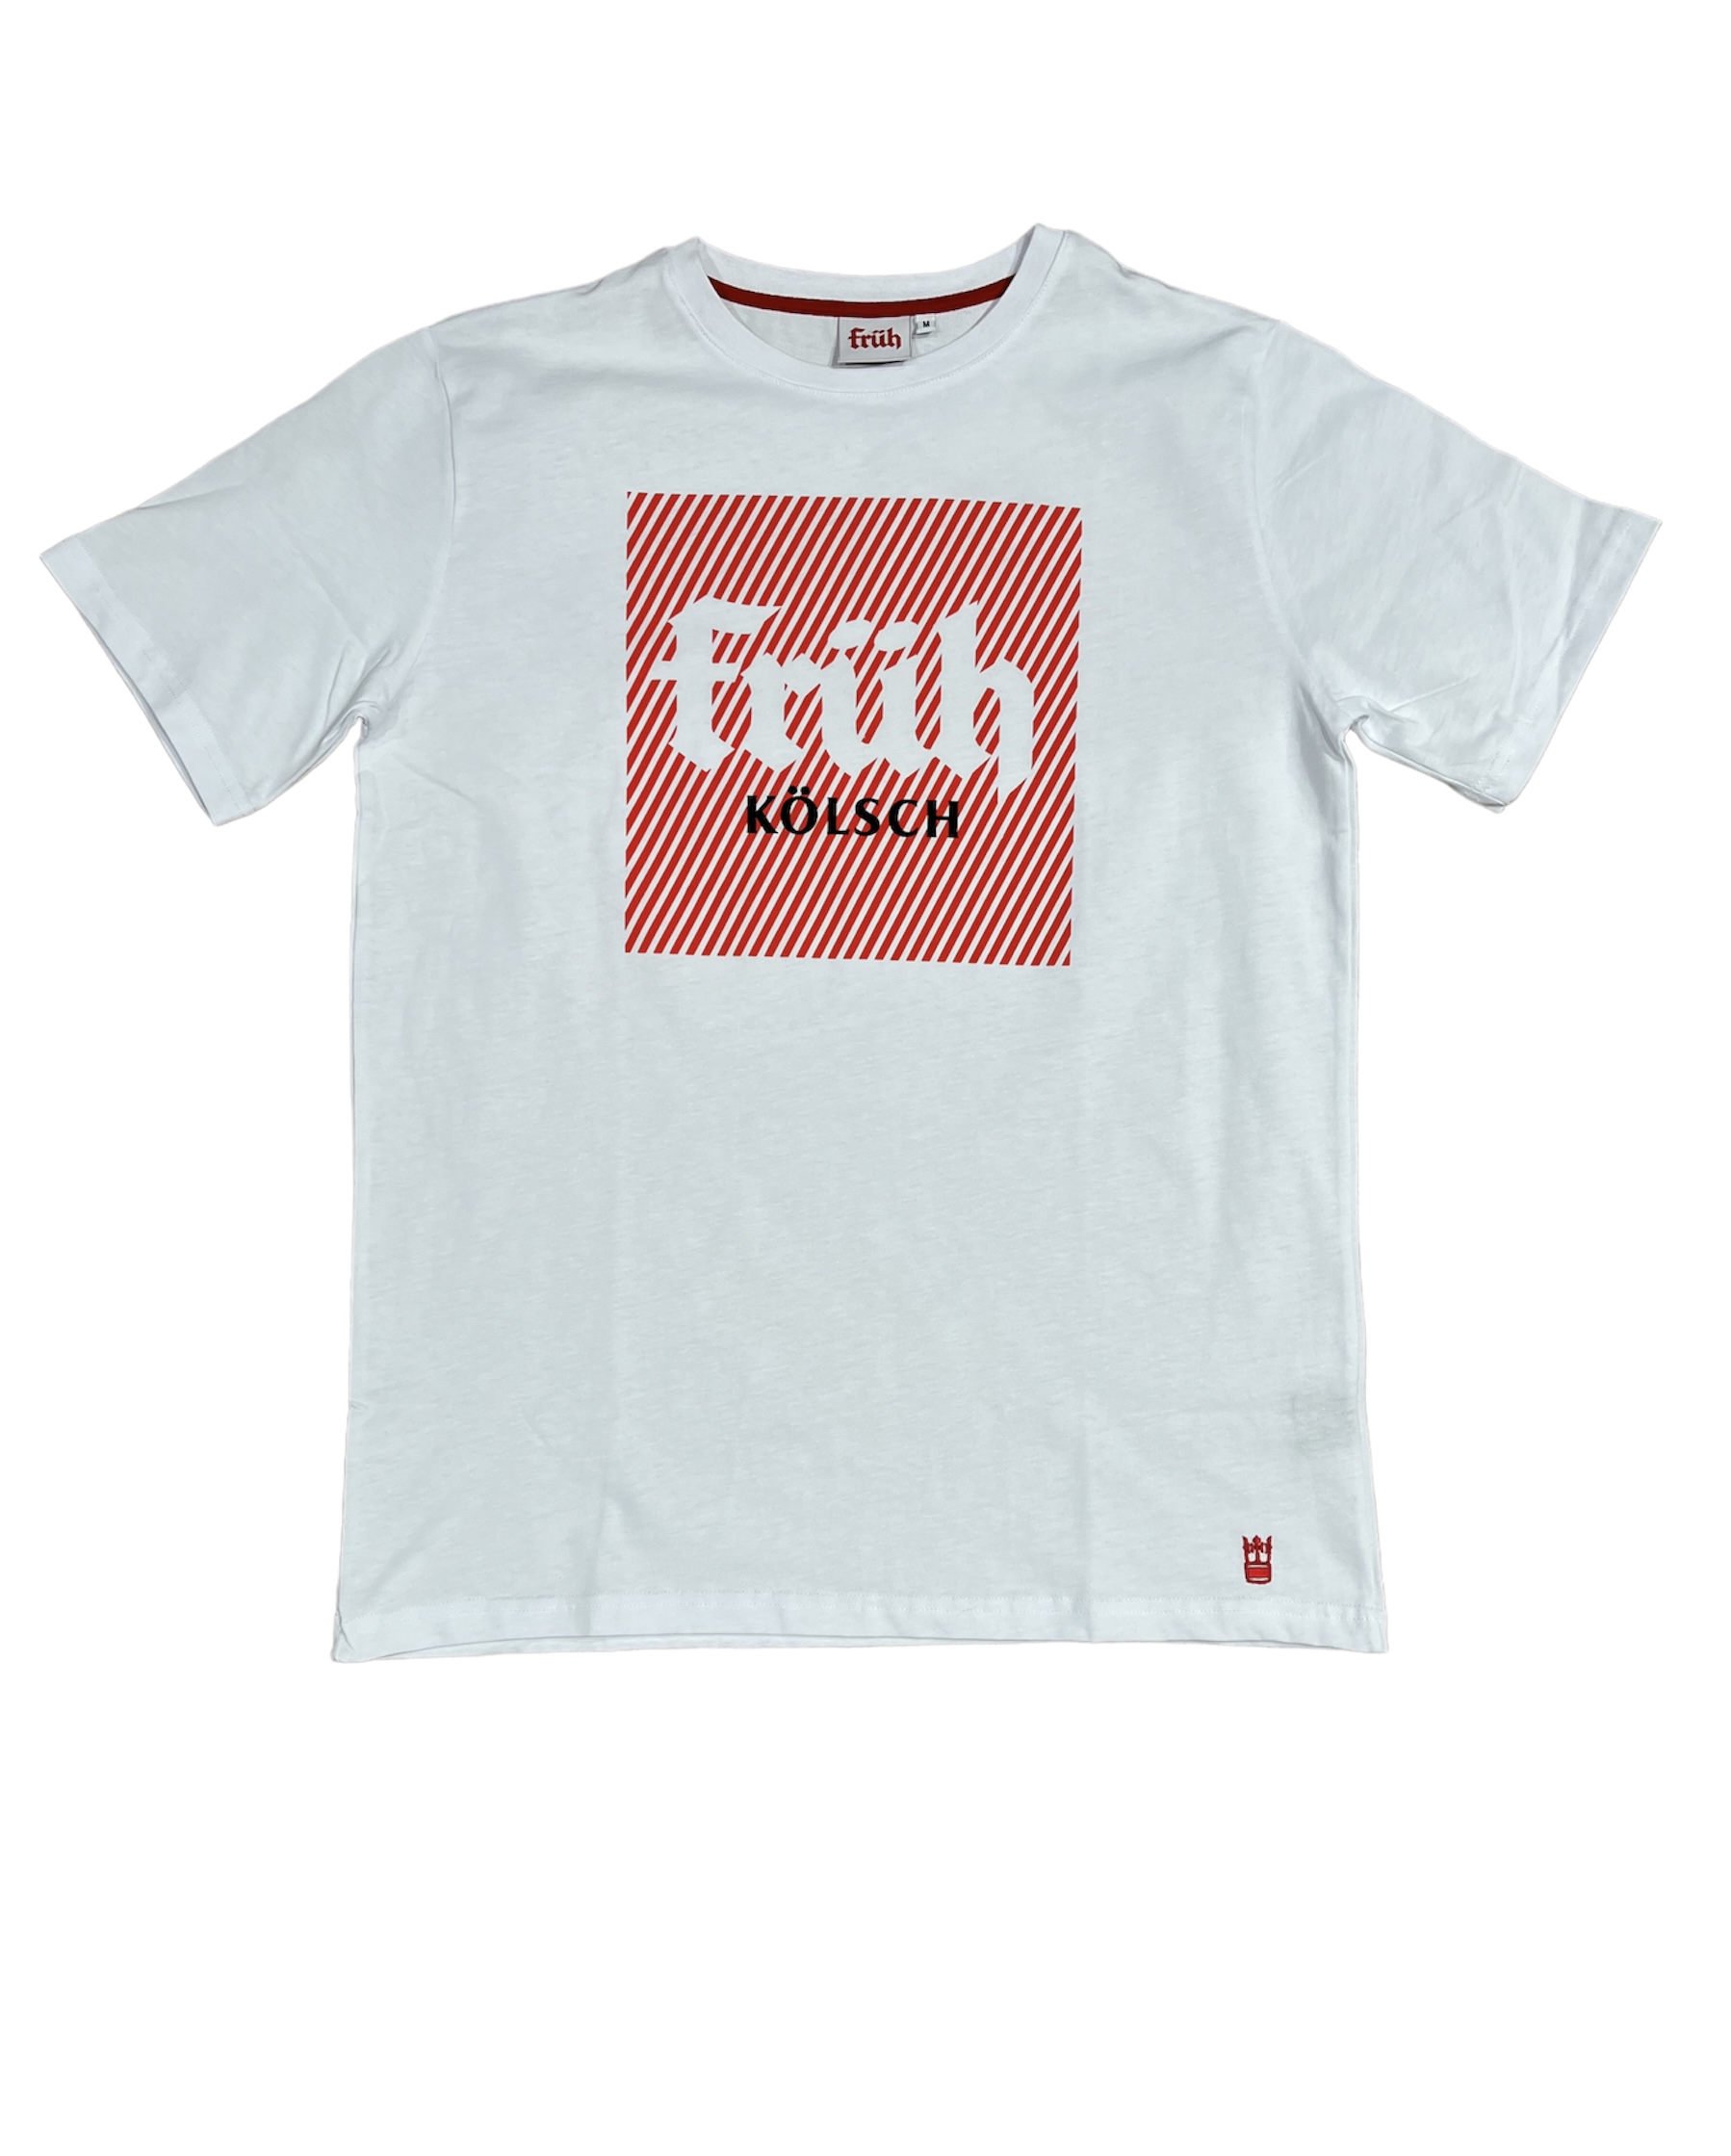 Früh T-Shirt weiss mit Früh Quadrat Logo